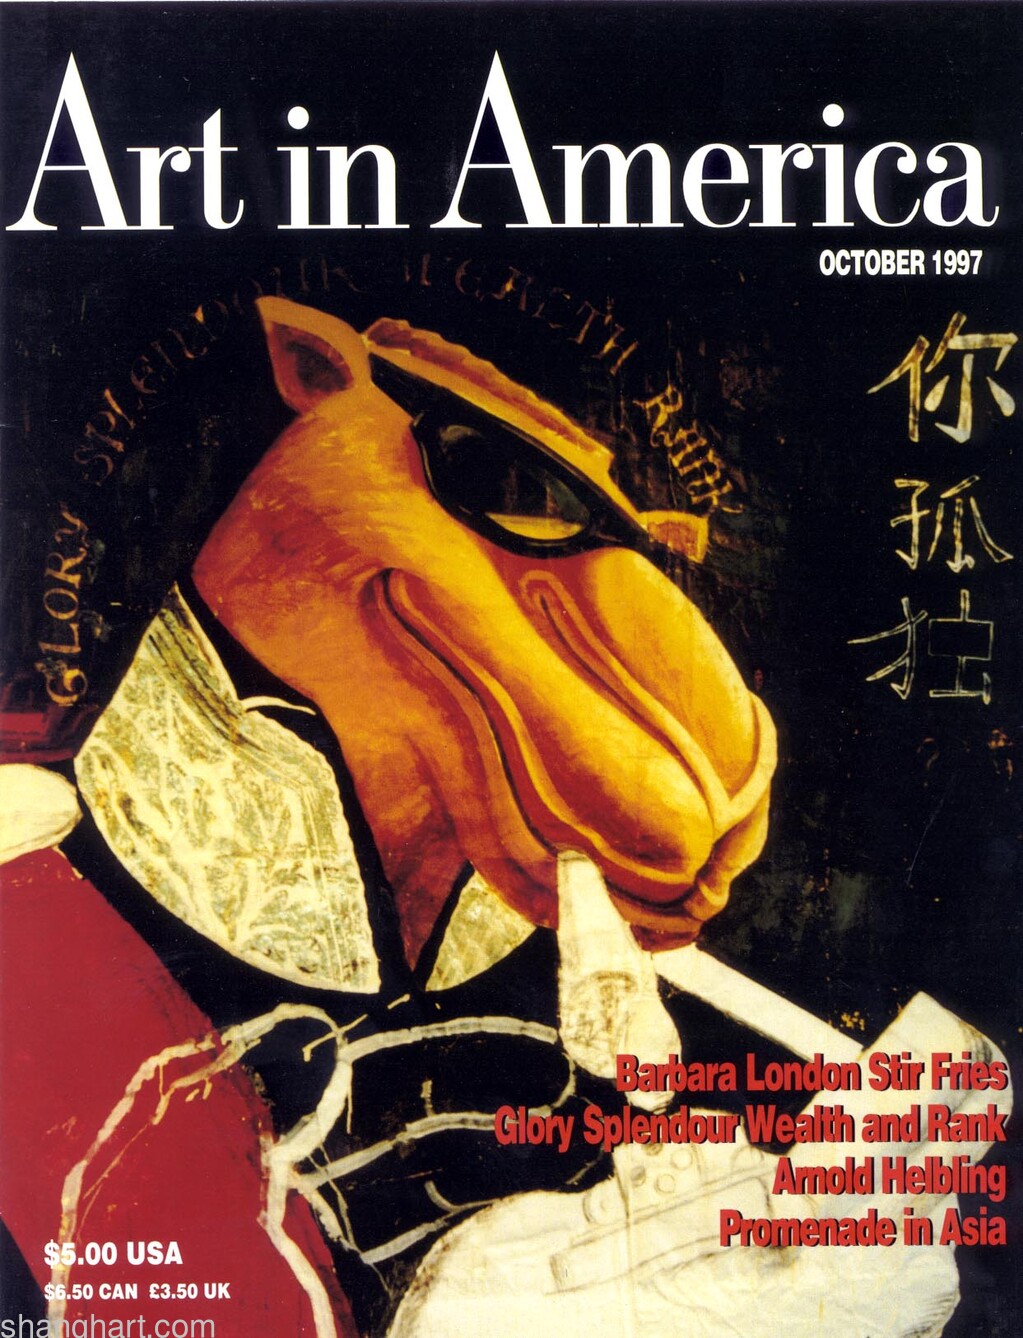 Art in America, 27.6x22.9cm